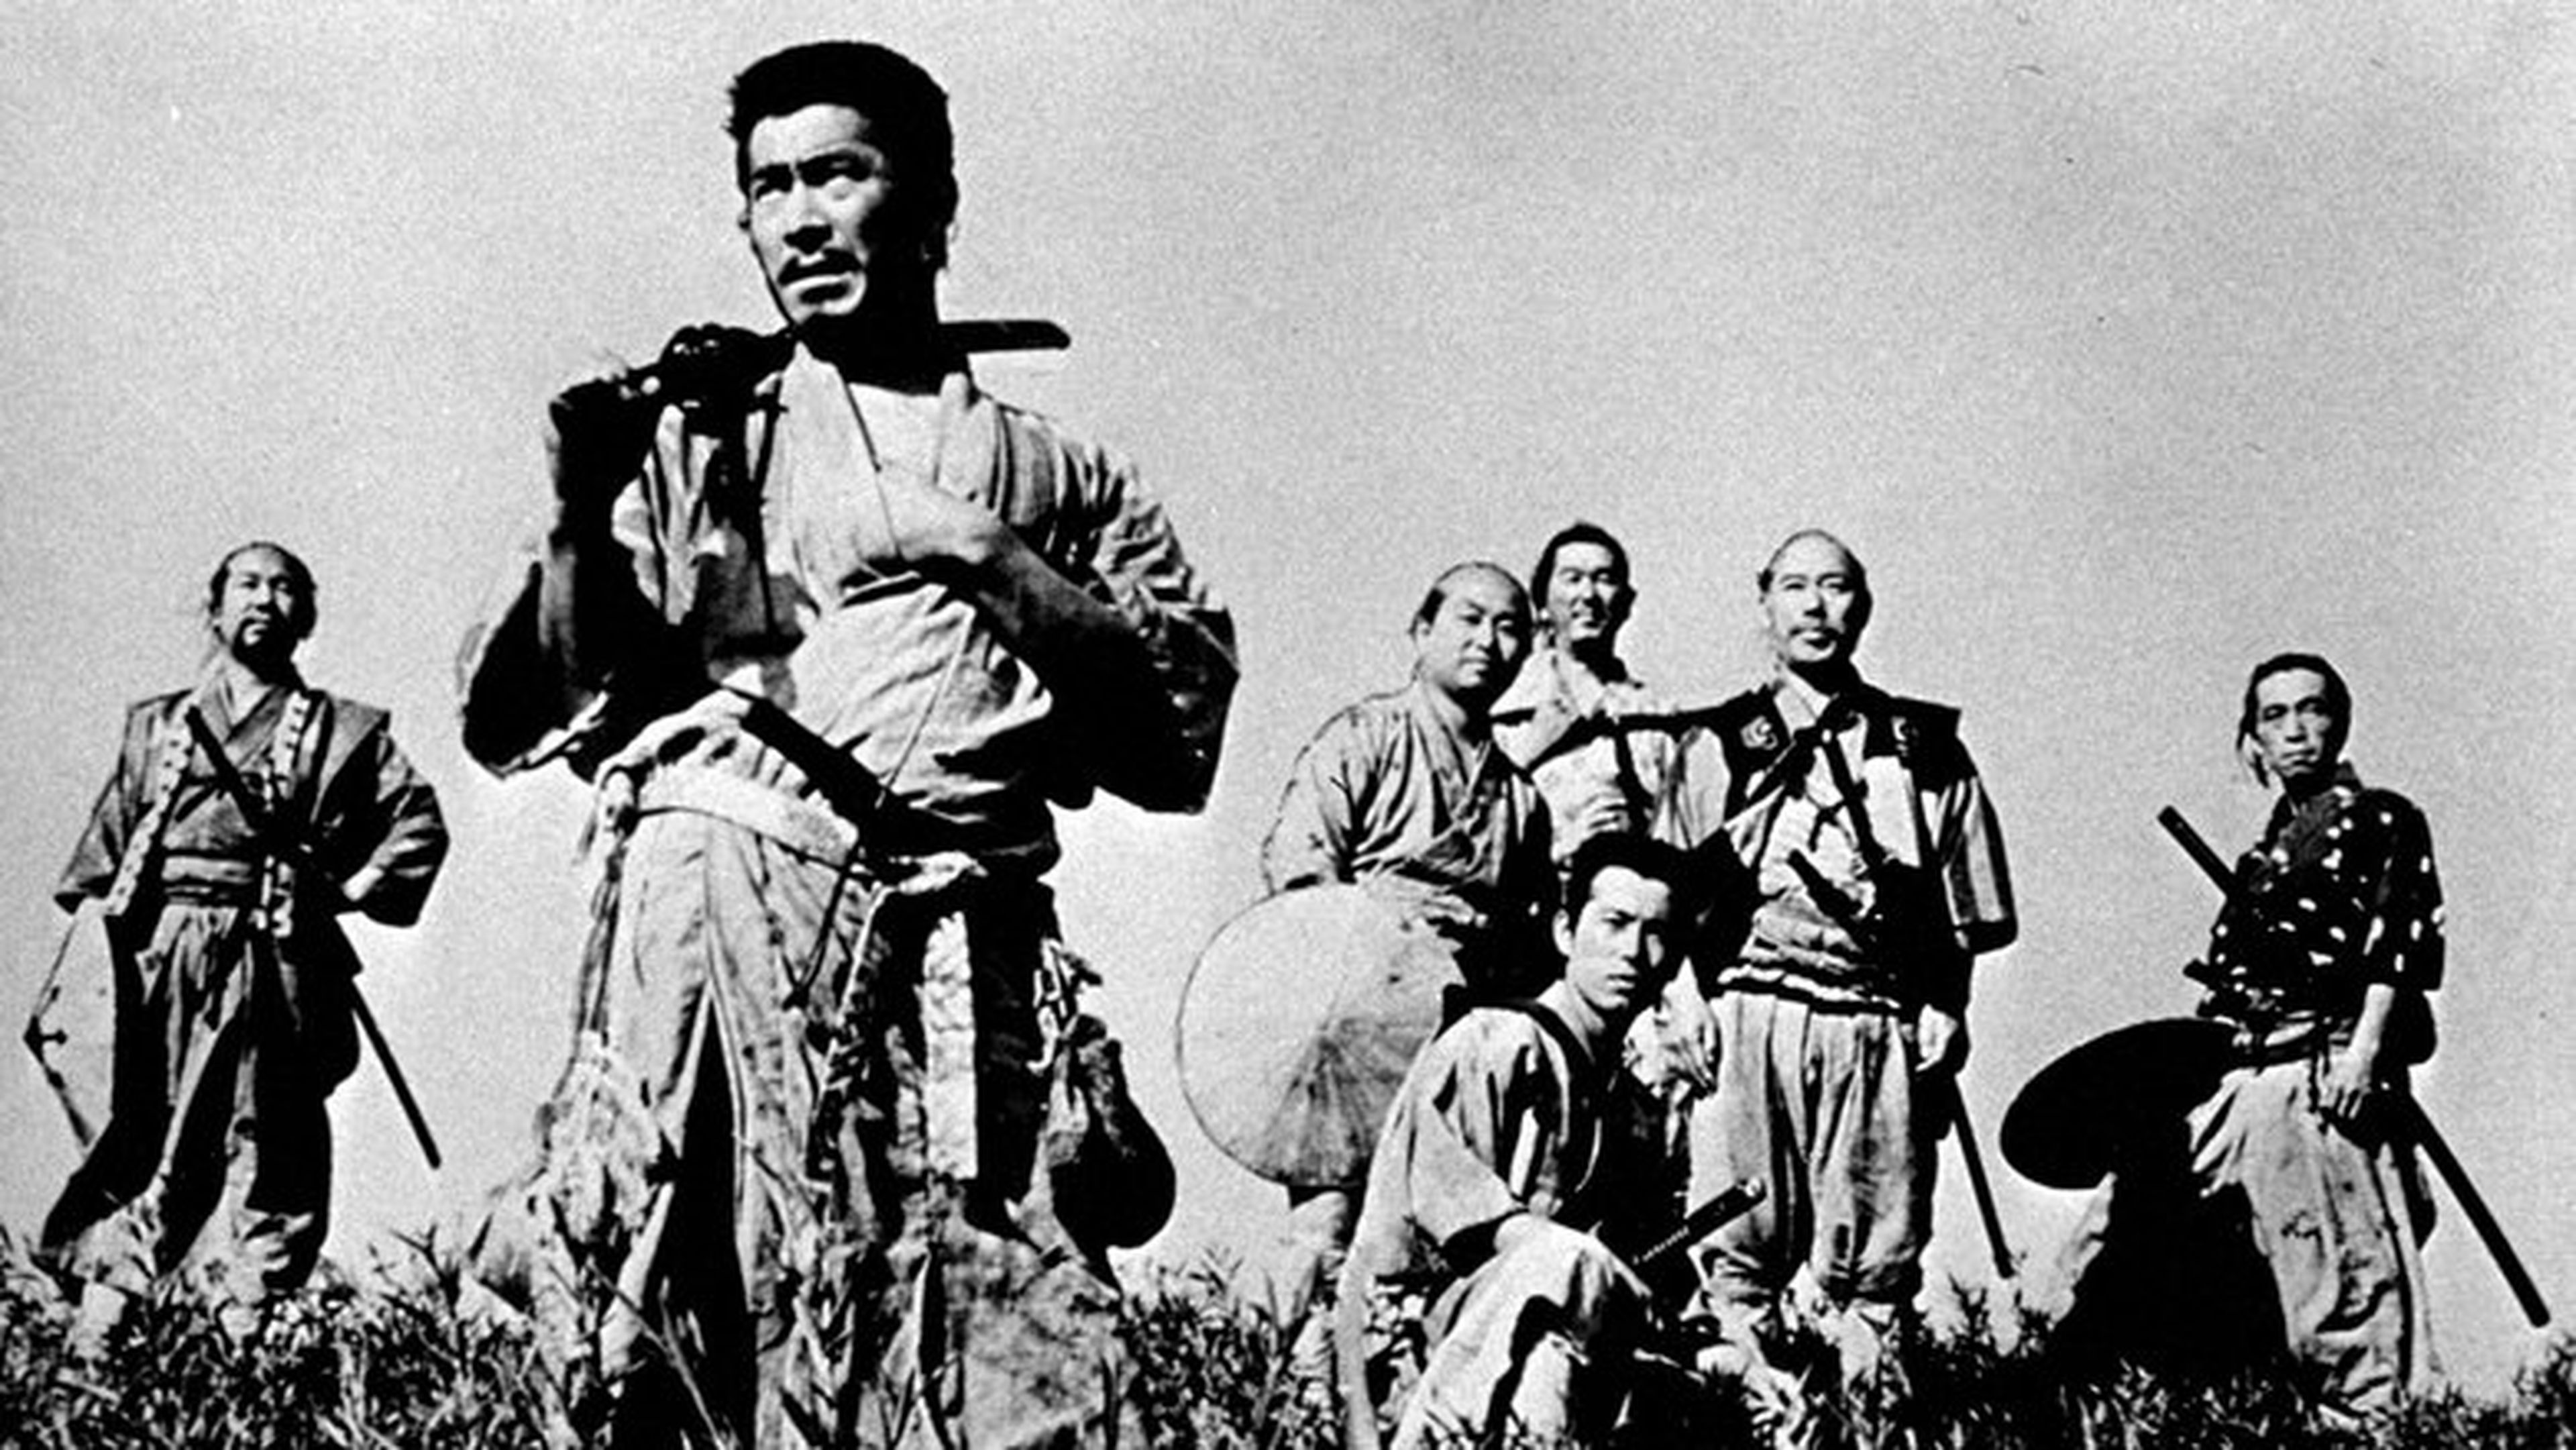 Los 7 Samuráis con Toshiro Mifune (Kikuchiyo) en primer plano